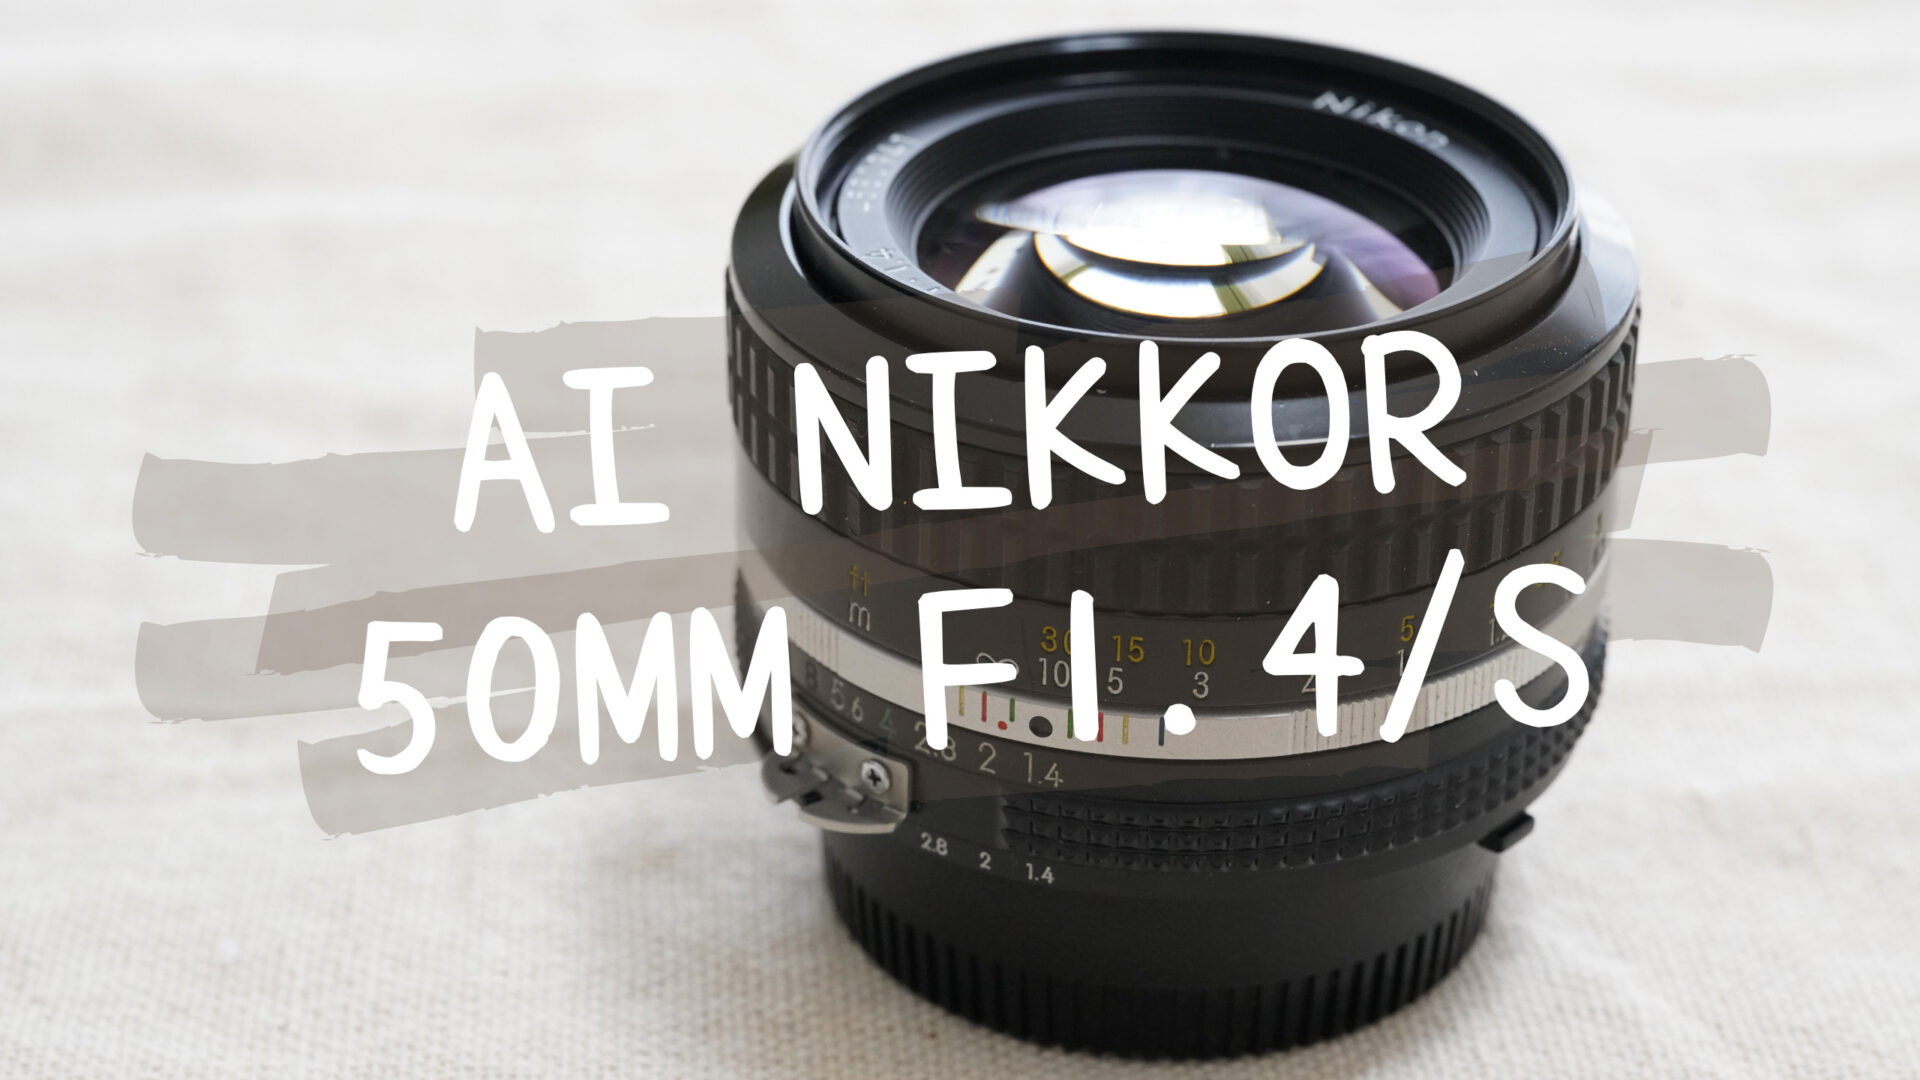 New NIKKOR 50mm 1:1.4